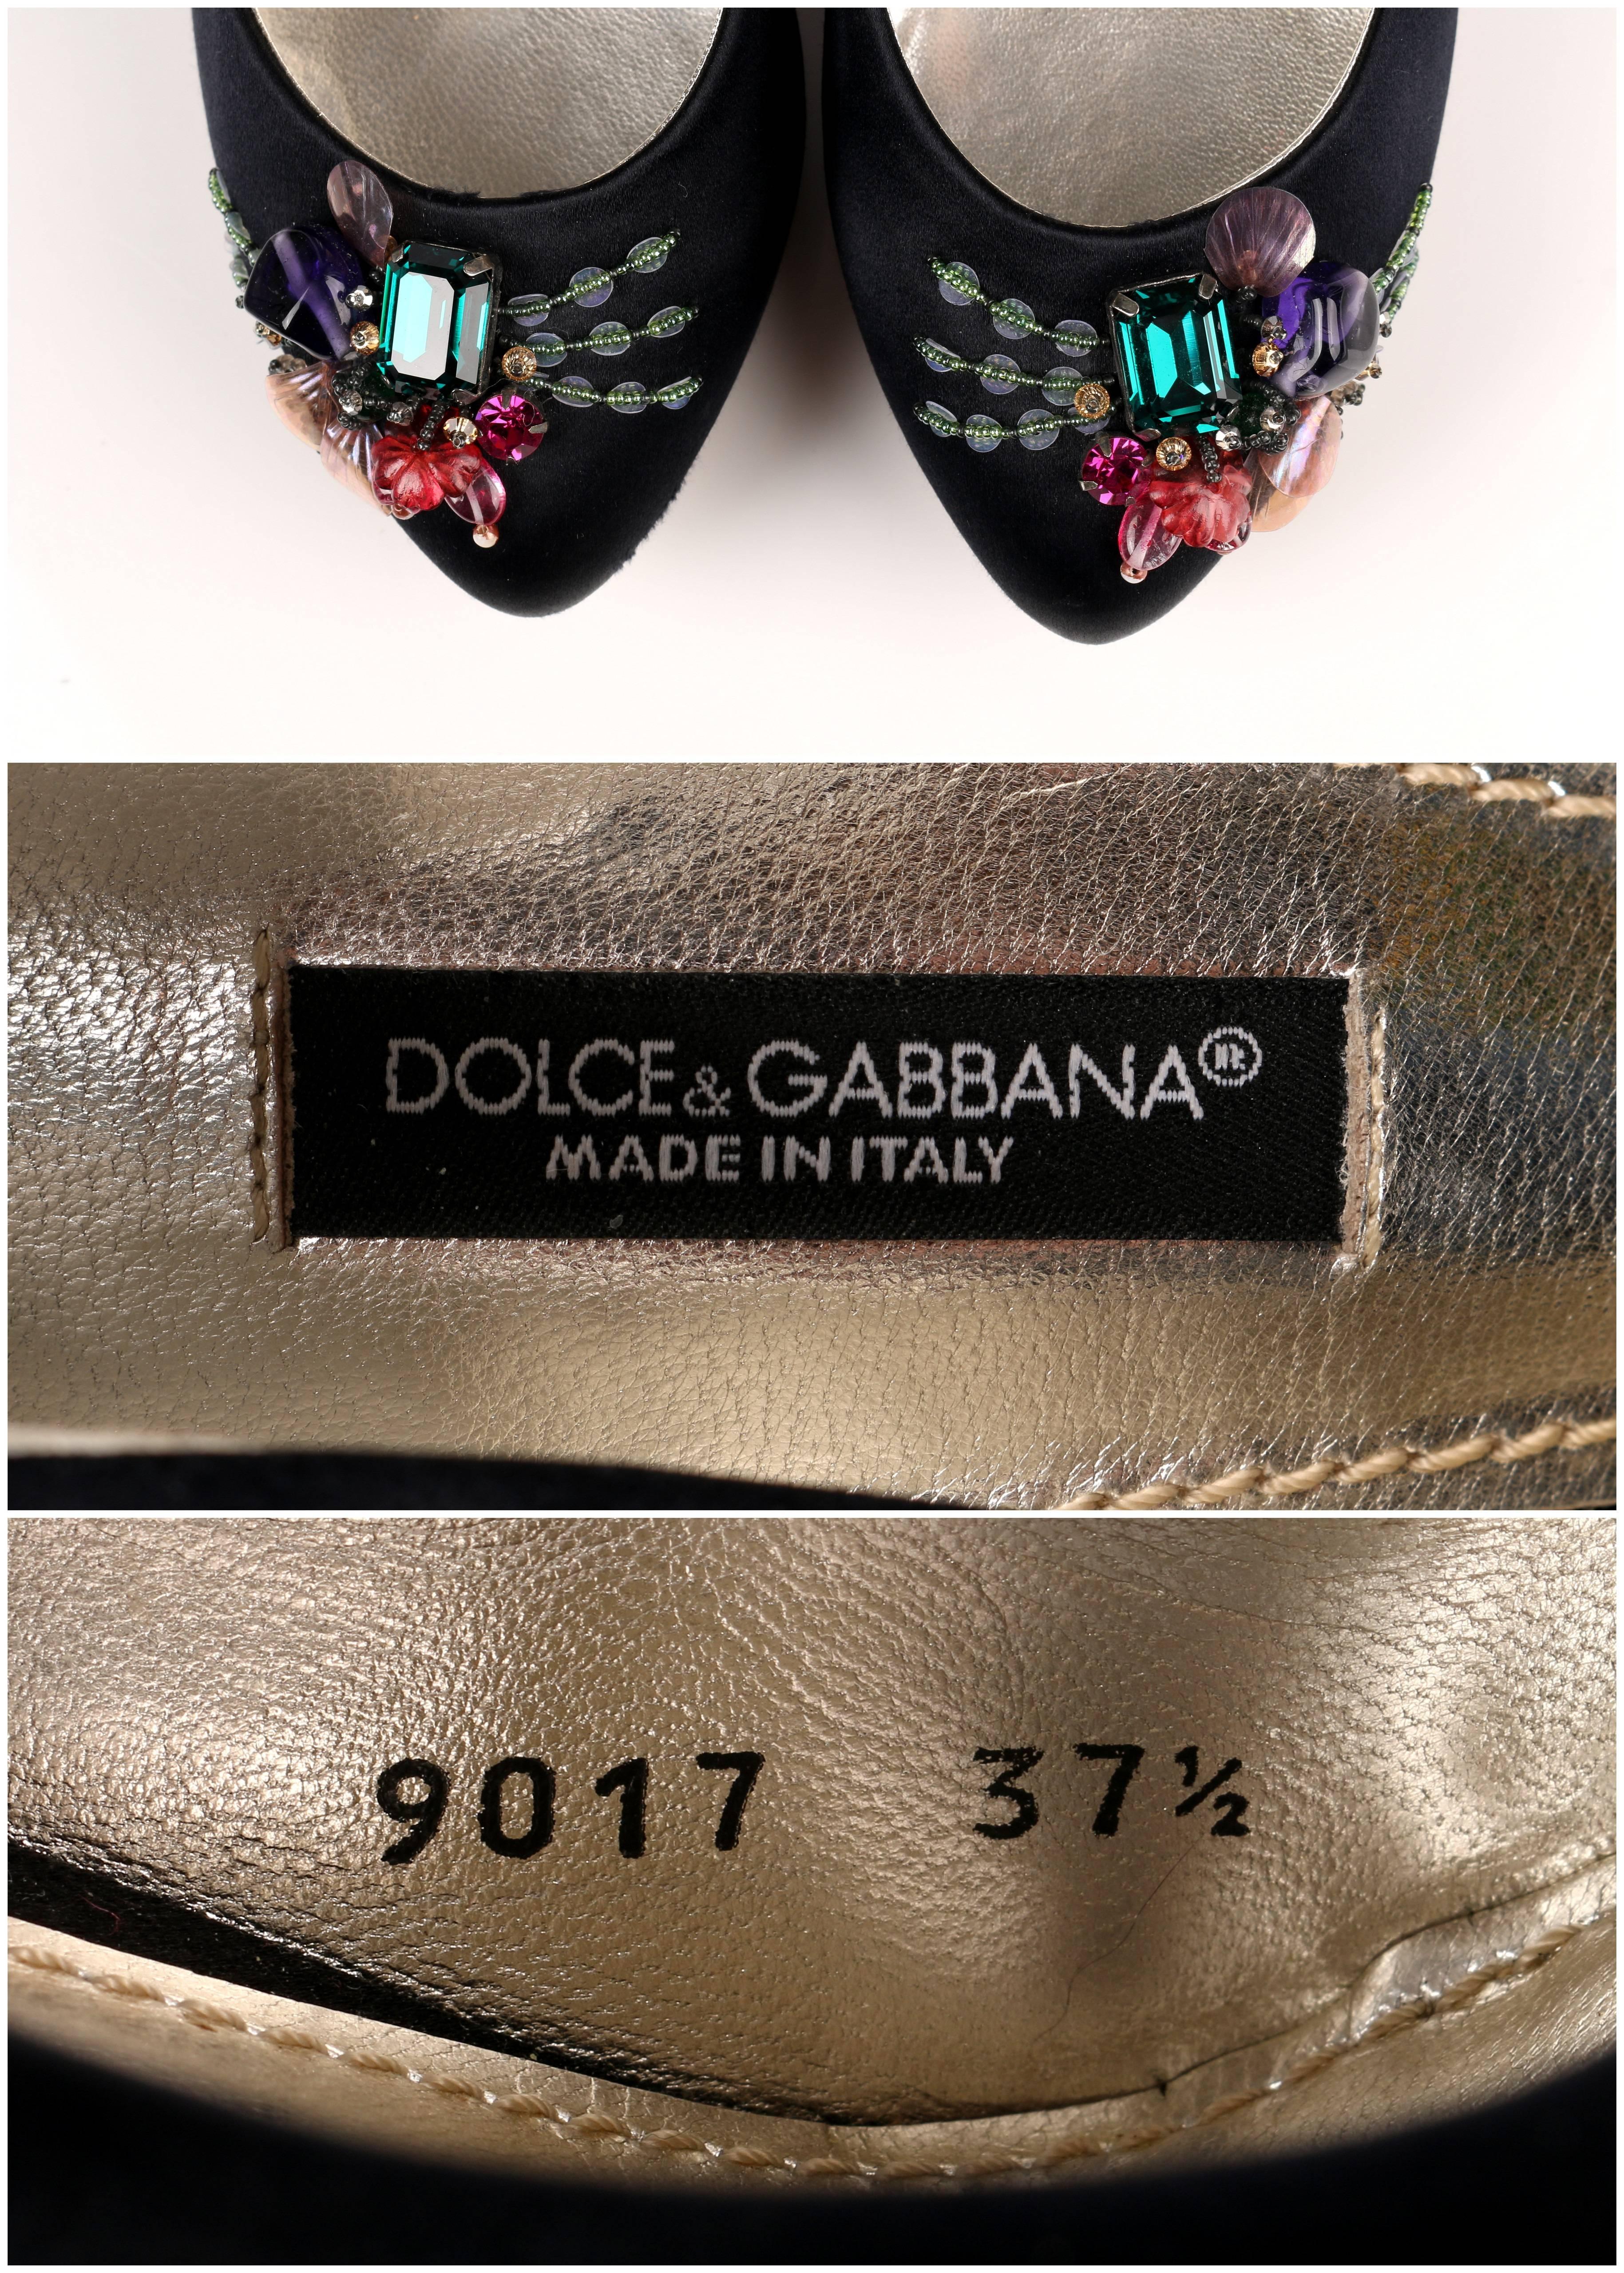 DOLCE & GABBANA Black Satin Beaded Embellished Platform Pumps Heels Shoes 37.5 4